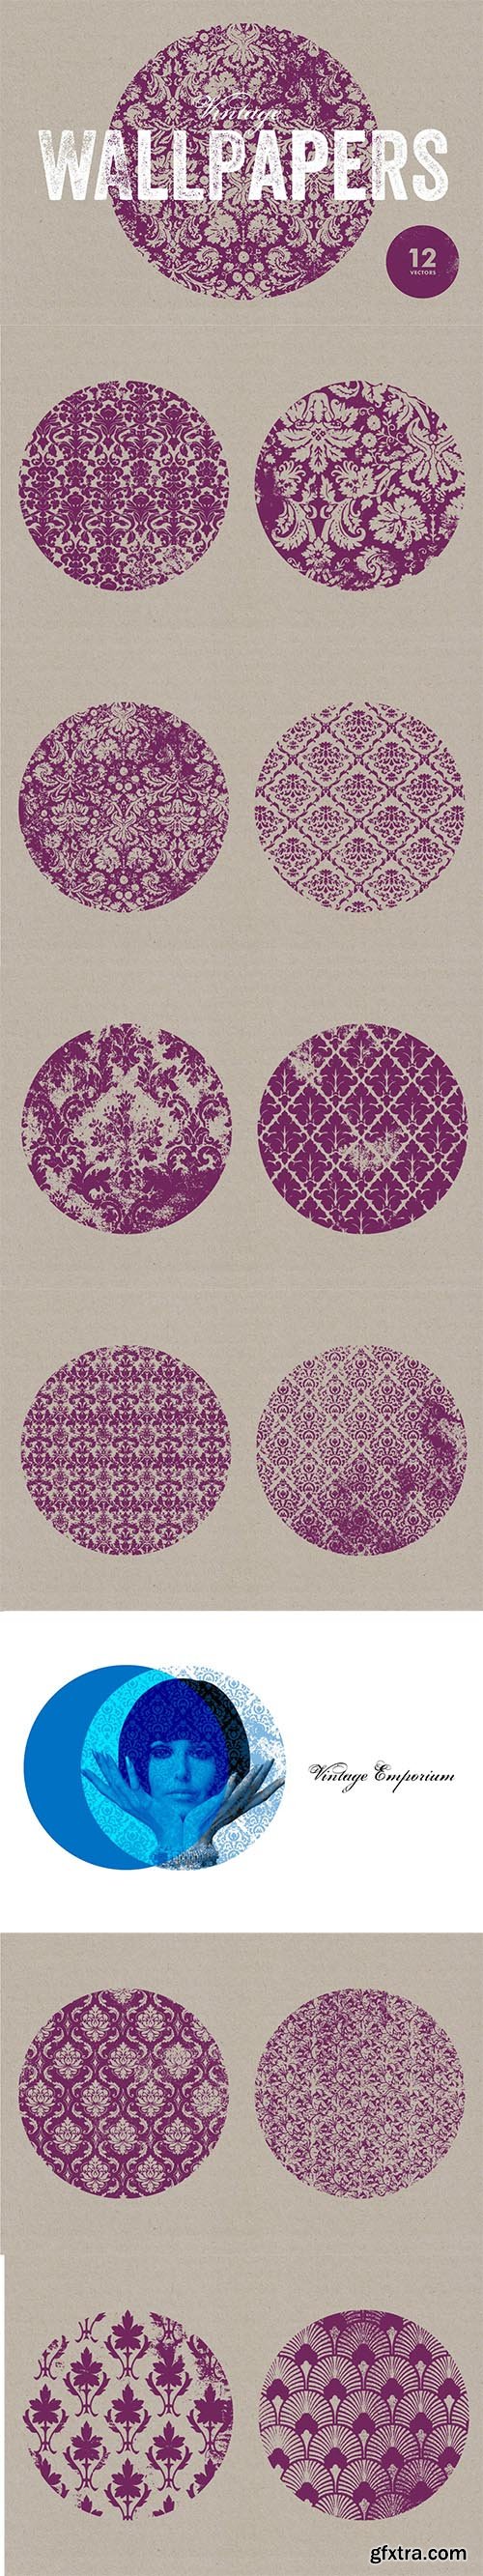 Vintage Wallpaper Textures